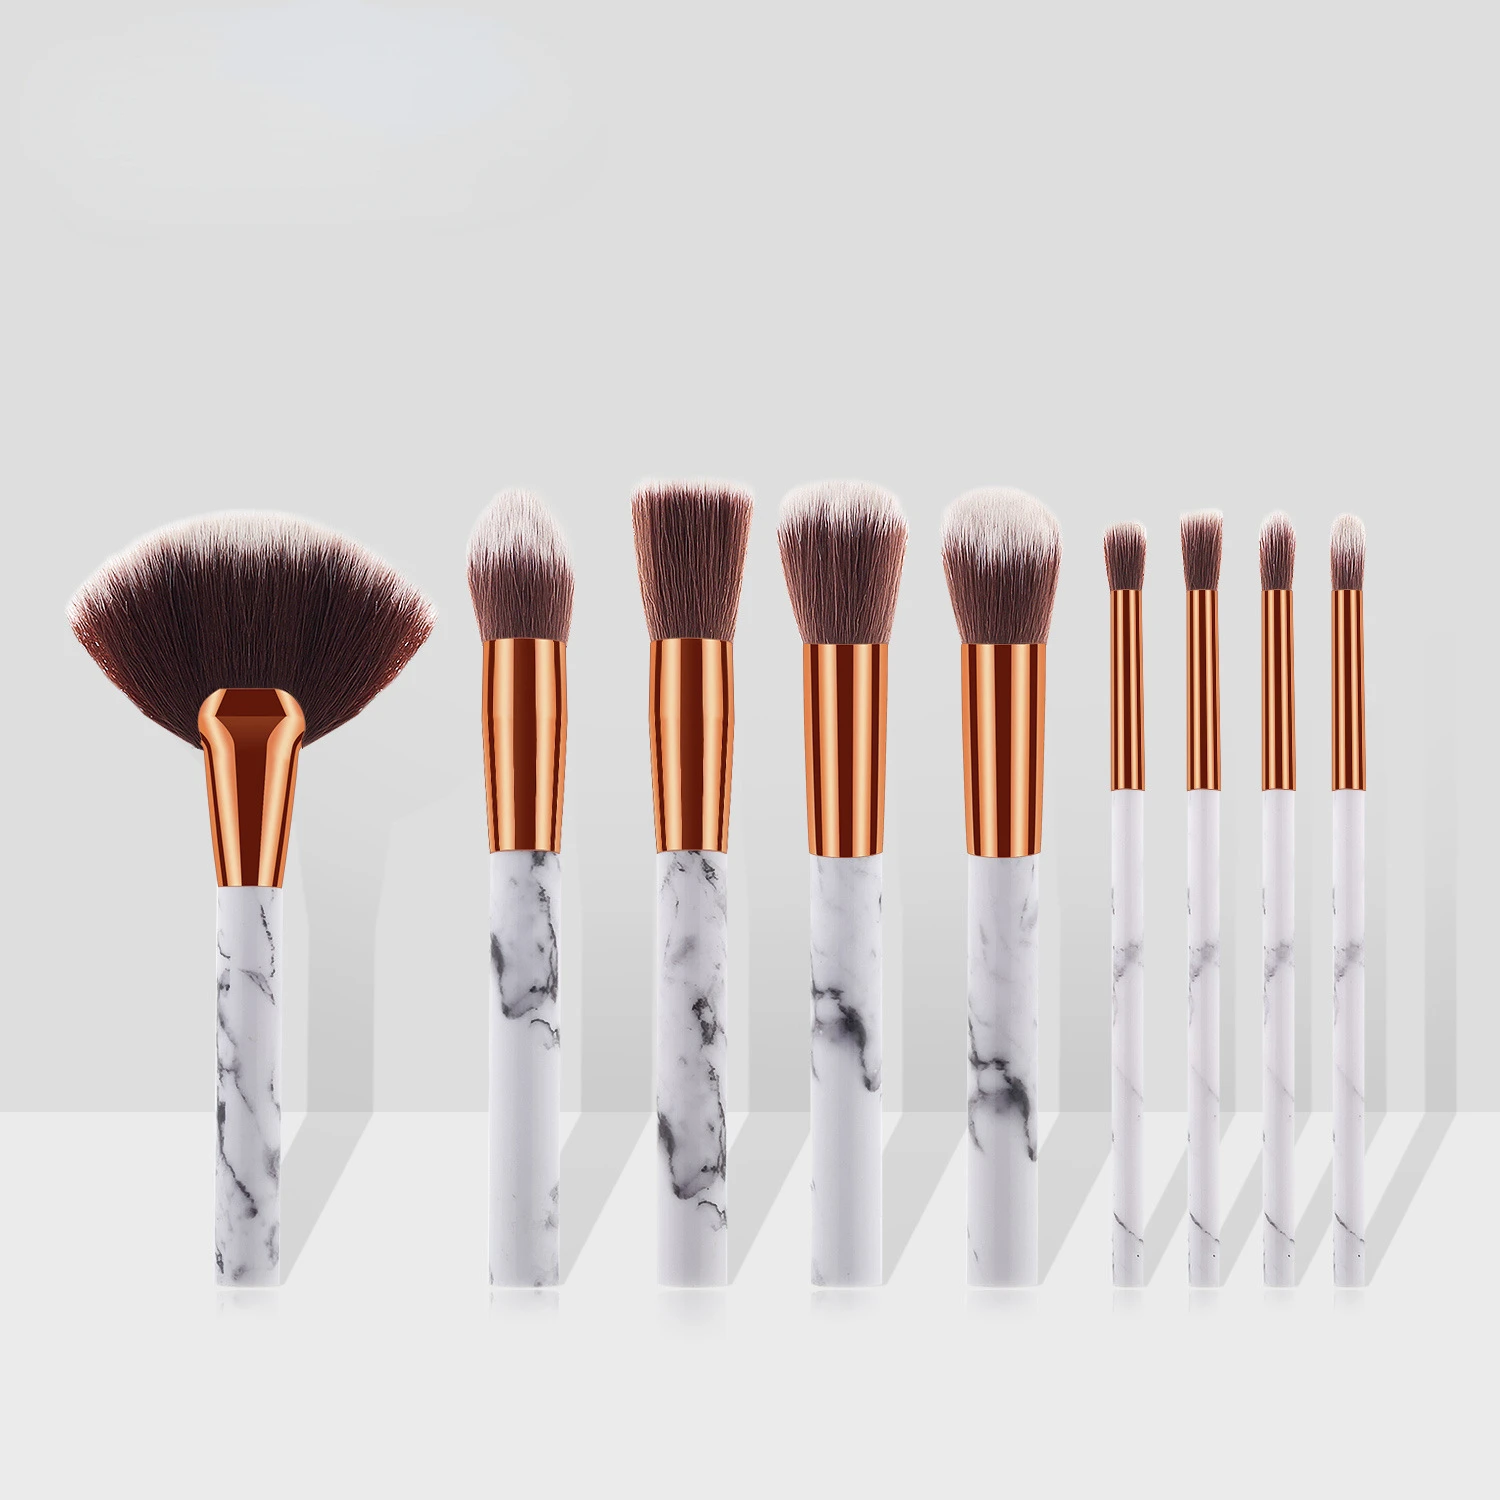 

10 Marbled Makeup Brushes Kit Set Makeup Make-up Brushes Tool Beauty Cosmetics Makeup Make Up Brush Sets Mini Brushes For Makeup